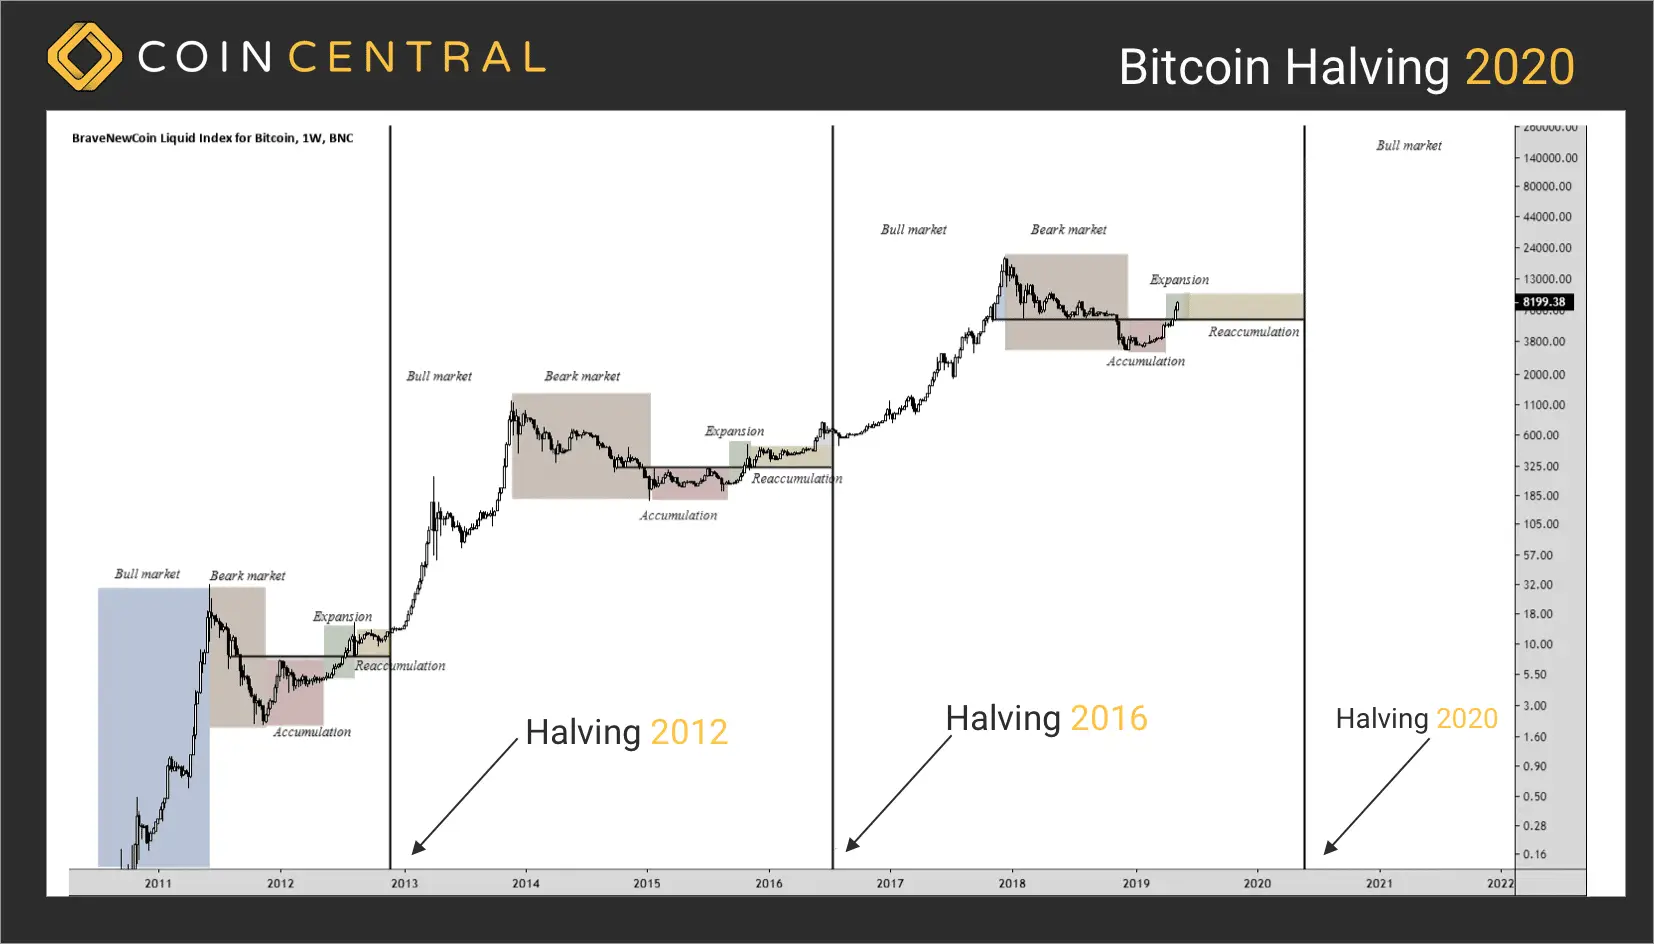 ¿Qué es el Bitcoin Halving, cuándo ocurrirá (en 2024) y por qué es importante?

El Bitcoin Halving, también conocido como “reducción a la mitad”, es un evento importante en el mundo de las criptomonedas, específicamente en la red Bitcoin. Este evento ocurre aproximadamente cada cuatro años y tiene un impacto significativo en la economía y la minería de Bitcoin.

Entonces, ¿qué es exactamente el Bitcoin Halving? Es el proceso en el cual se minimize a la mitad la recompensa en bitcoins que los mineros reciben por validar y agregar nuevas transacciones a la blockchain de Bitcoin. Inicialmente, cuando se lanzó Bitcoin en 2009, los mineros recibían 50 bitcoins por cada bloque minado. Sin embargo, gracias al Halving, esta cantidad se ha ido reduciendo gradualmente.

En 2012, el primer Halving ocurrió y la recompensa se redujo a 25 bitcoins por bloque. Luego, en 2016, ocurrió el segundo Halving y la recompensa se redujo a 12,5 bitcoins por bloque. Actualmente, se espera el tercer Halving para el año 2024, momento en el cual la recompensa se reducirá a la mitad nuevamente a solo 6,25 bitcoins por bloque.

Ahora bien, ¿por qué es importante el Bitcoin Halving? Este evento tiene un impacto significativo en la oferta y la demanda de Bitcoin. La reducción de la recompensa implica que habrá menos bitcoins disponibles en el mercado. Esto puede llevar a una mayor escasez y, en consecuencia, a un aumento en el valor de Bitcoin debido a la ley de oferta y demanda.

Además, el Halving también tiene un impacto en la minería de Bitcoin. La reducción de la recompensa significa que los mineros recibirán menos bitcoins por su trabajo. Esto puede hacer que la actividad de minería sea menos rentable para algunos mineros, lo que podría llevar a una disminución en el poder de procesamiento de la red Bitcoin. Sin embargo, también puede llevar a una mayor competencia y a una mejora en la eficiencia de los equipos de minería.

En resumen, el Bitcoin Halving es un evento necessary en el mundo de las criptomonedas. No solo afecta la oferta y la demanda de Bitcoin, sino que también tiene implicaciones en la actividad de minería. Si bien el próximo Halving está programado para 2024, es un evento que los entusiastas de las criptomonedas y los inversores deben tener en cuenta debido a su impacto en el mercado